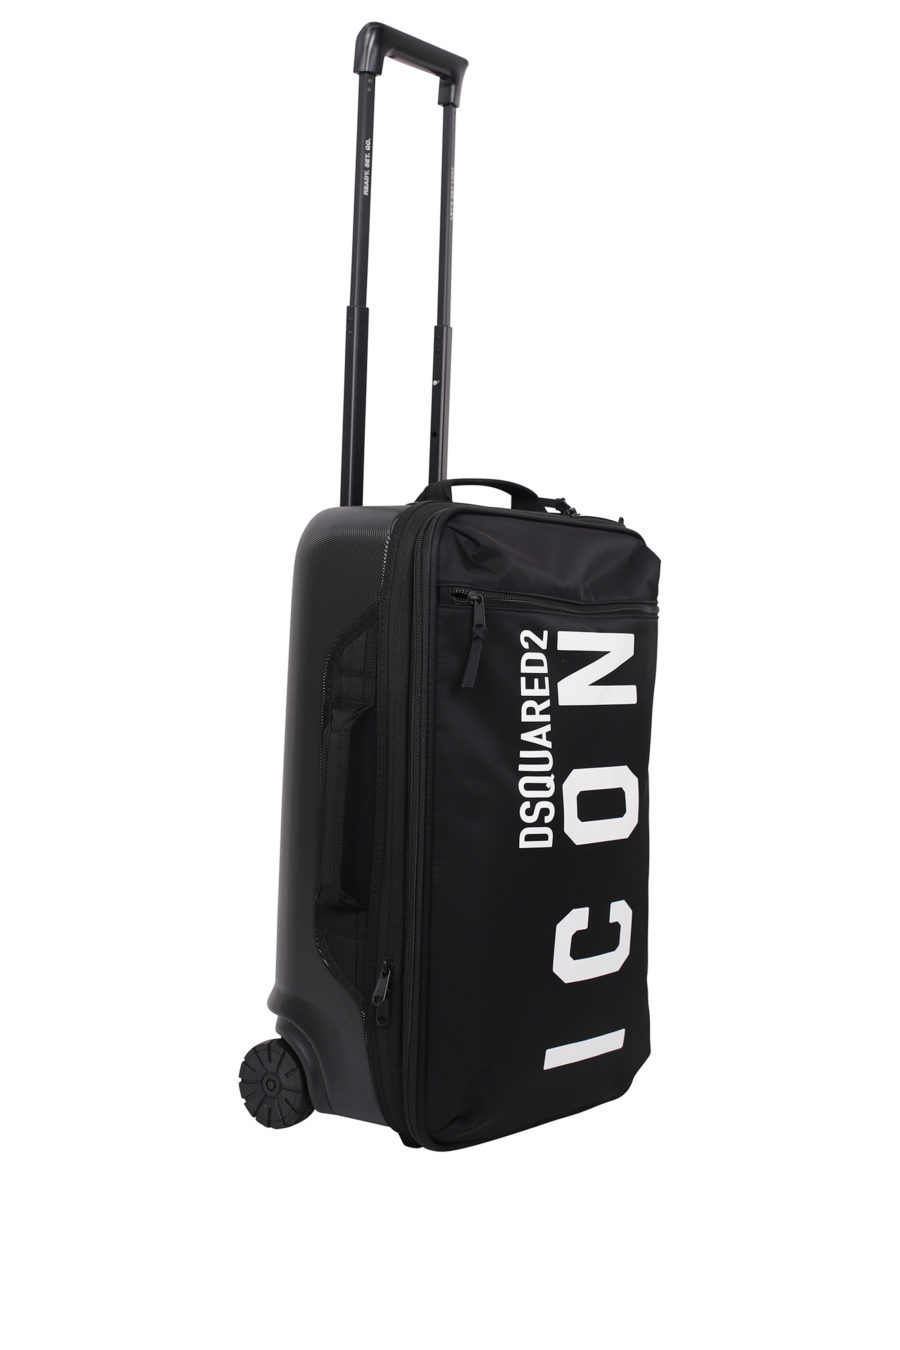 Valise à roulettes noire avec logo "icon" - IMG 9701